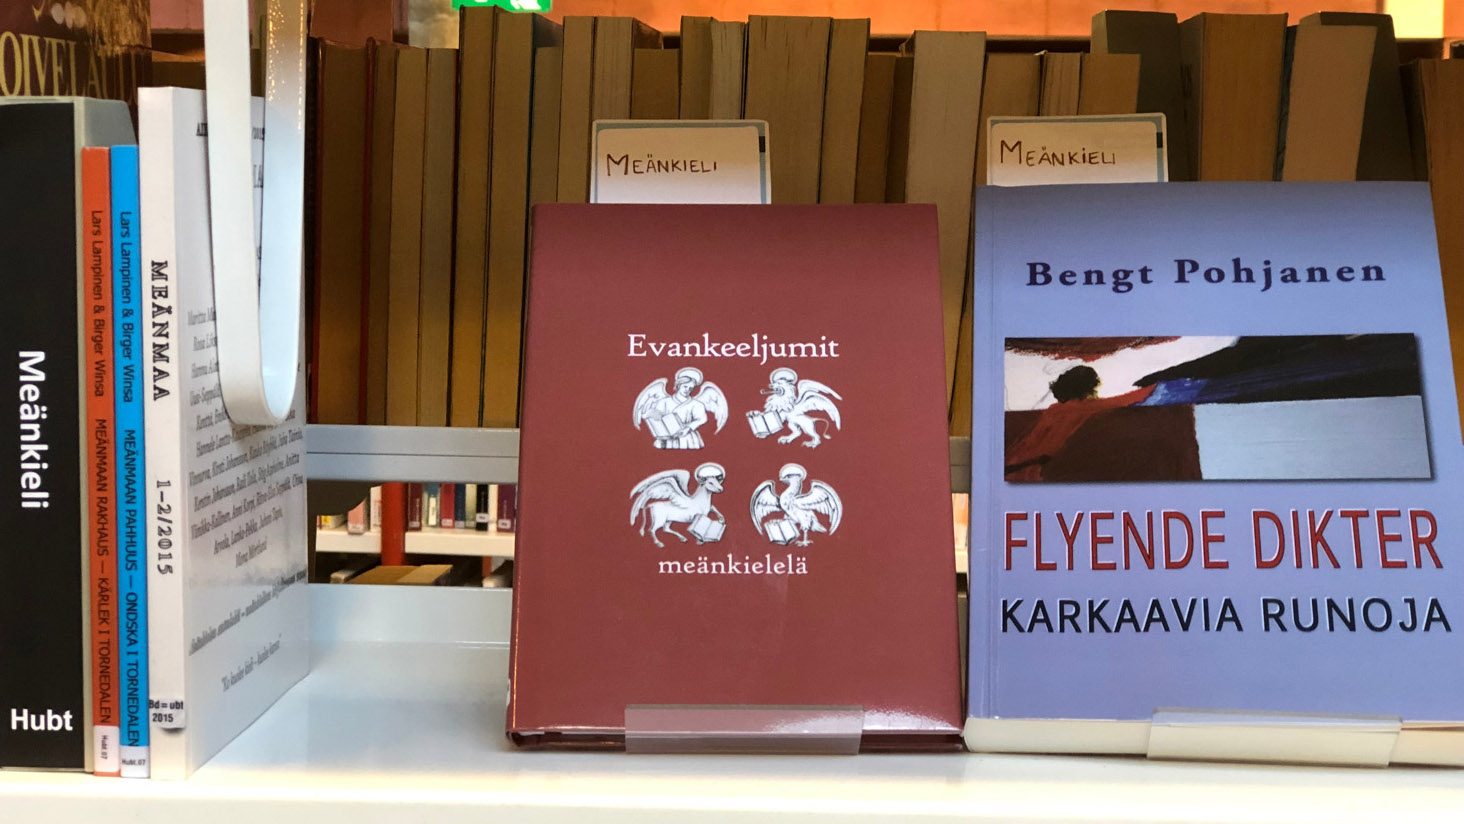 Böcker på meänkieli, Hallunda bibliotek. Från KB:s mediabank.